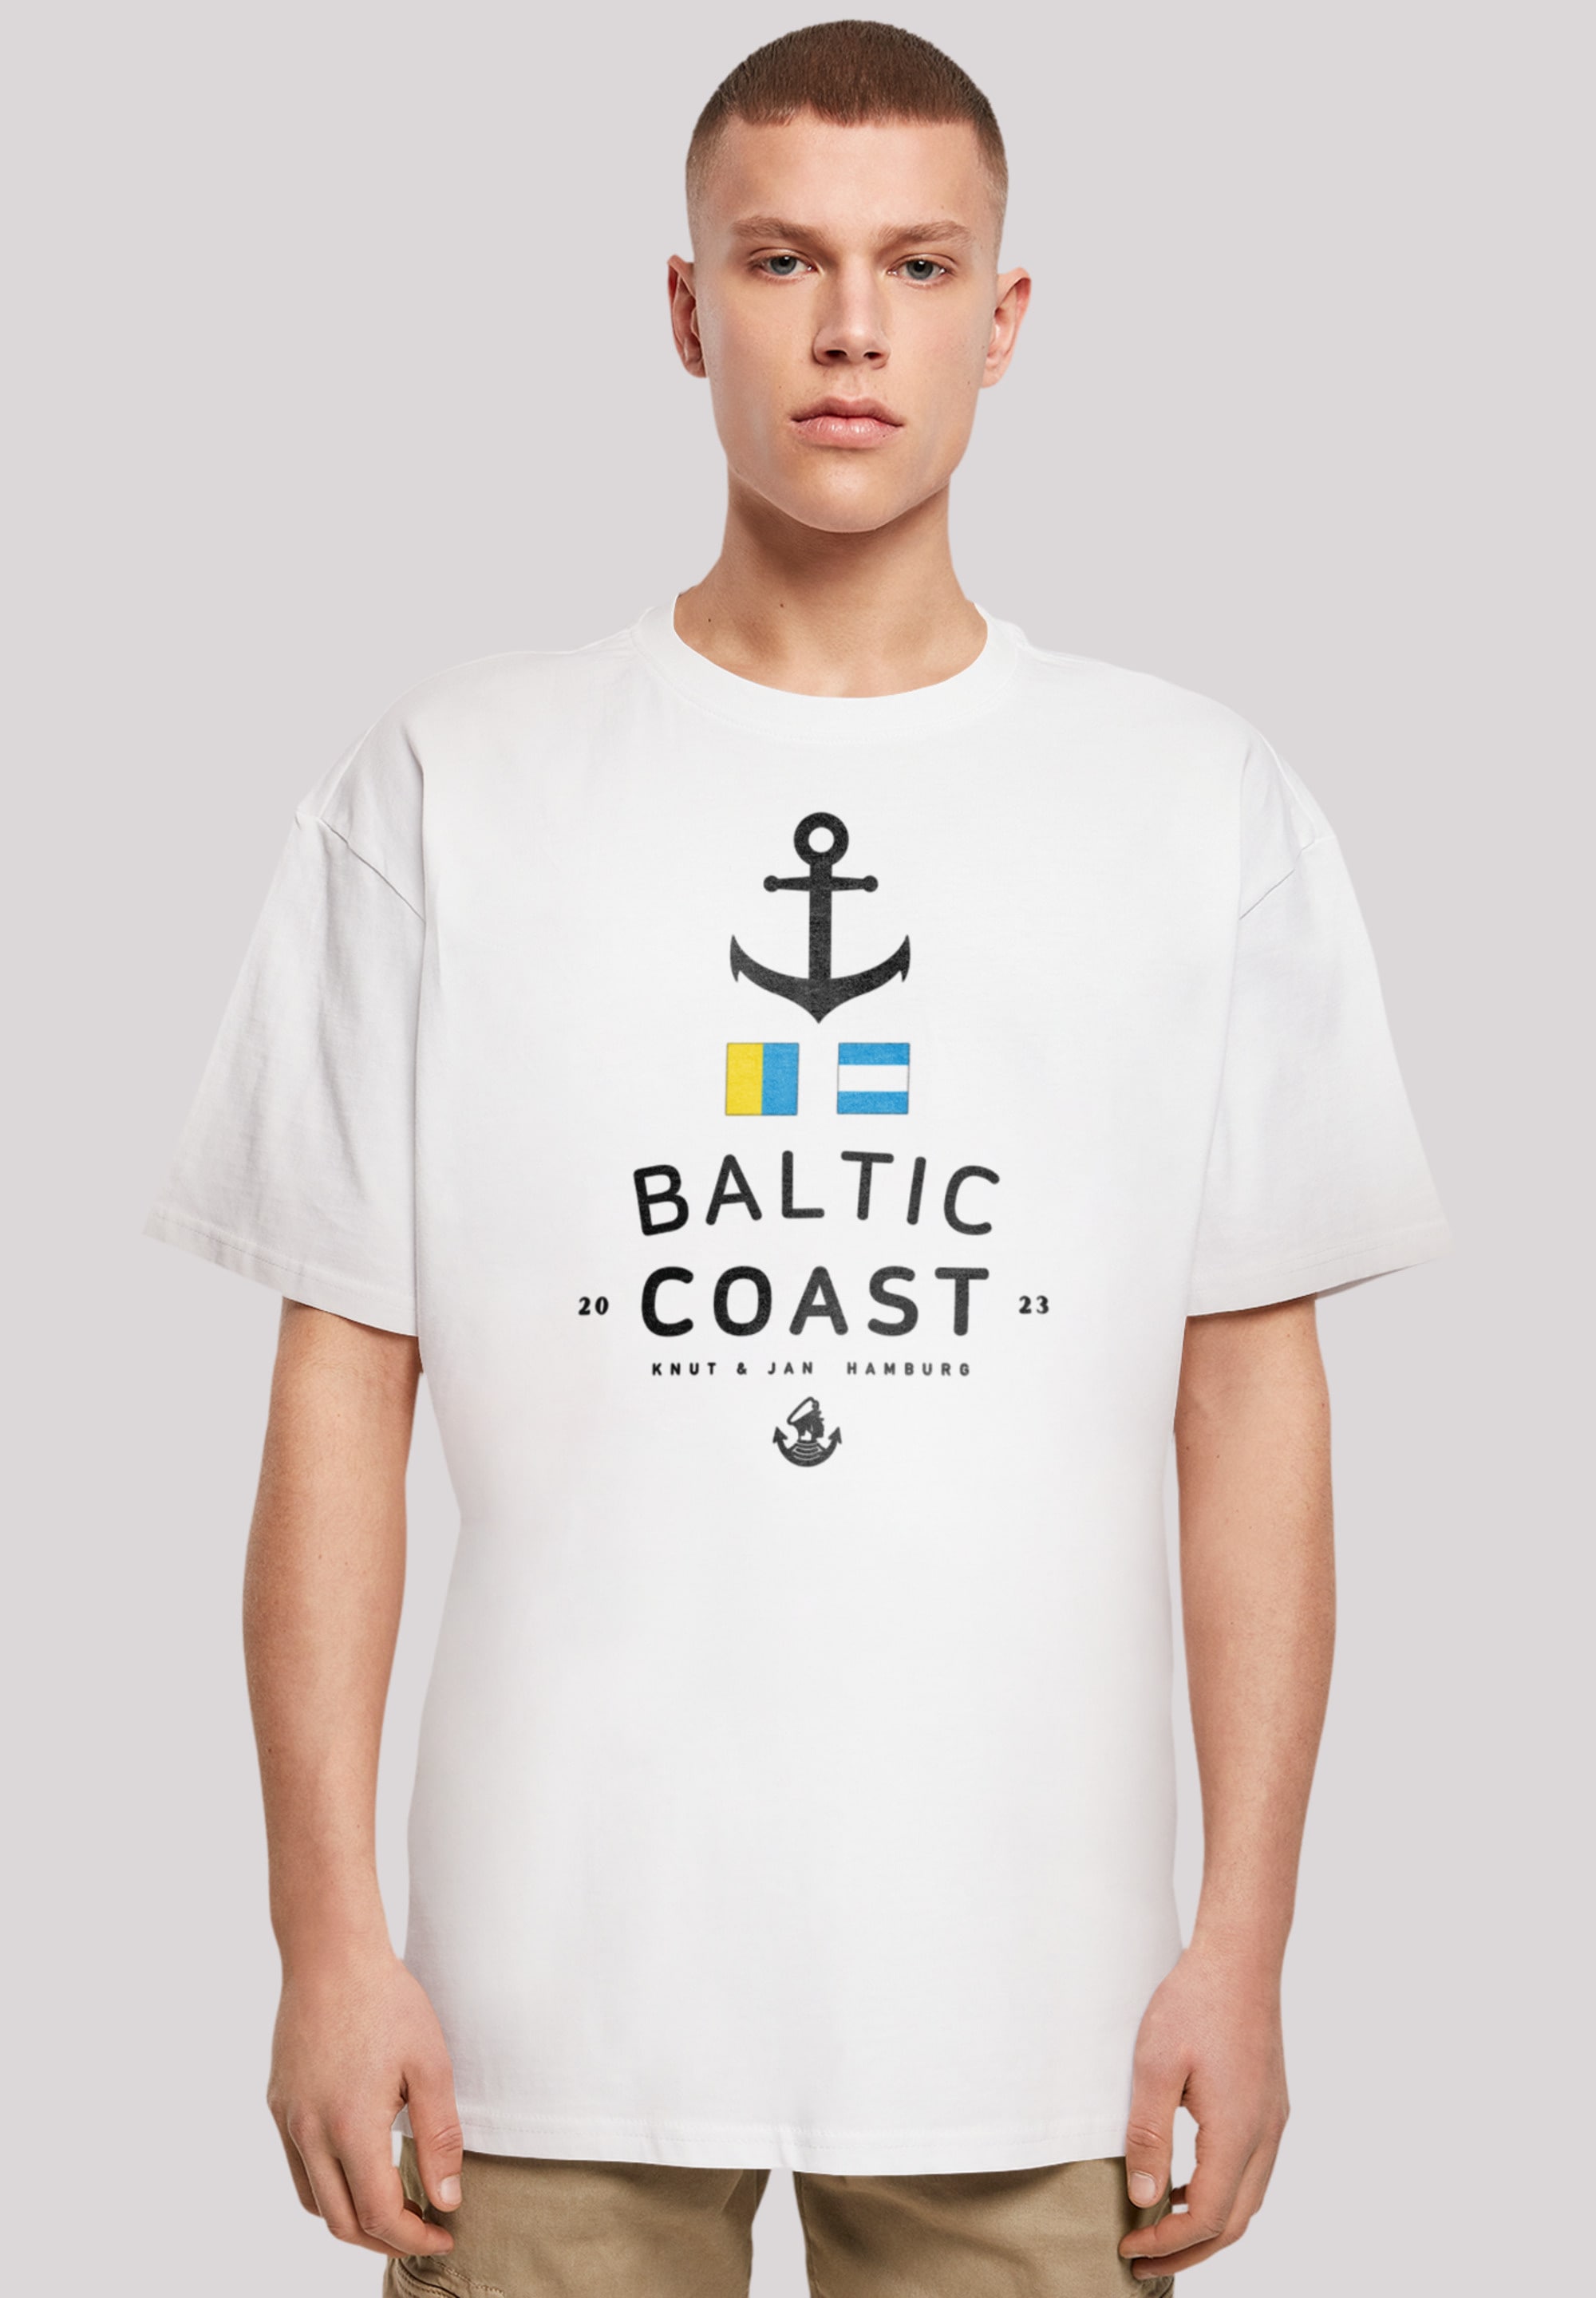 T-Shirt »Ostsee Baltic Sea Knut & Jan Hamburg«, Print